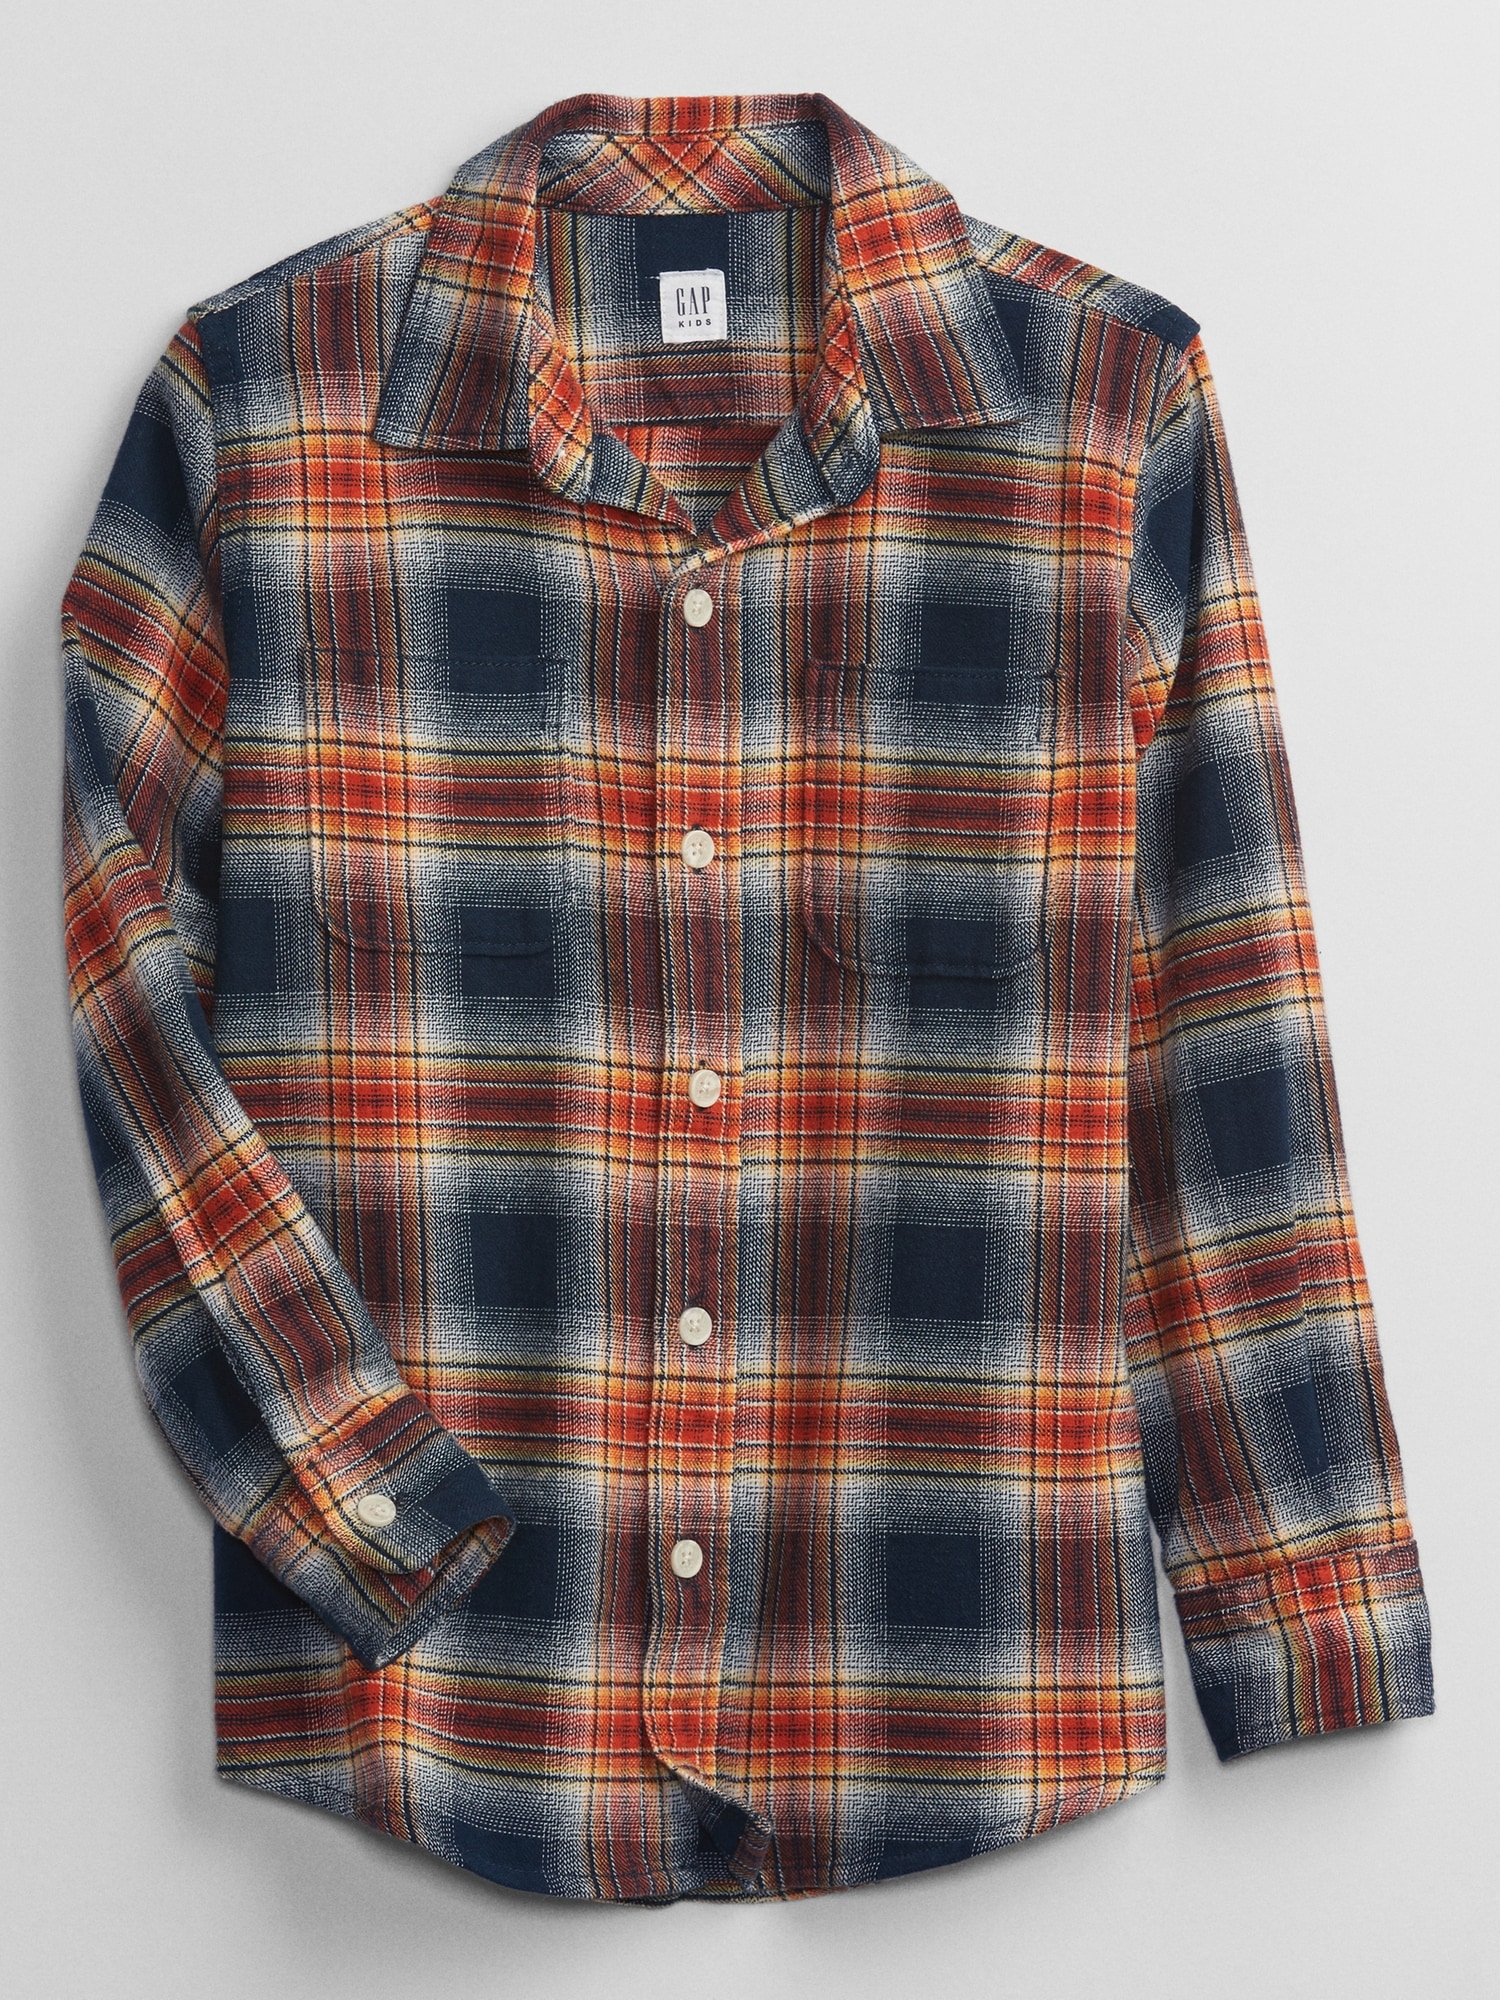 Kids Flannel Shirt | Gap Factory